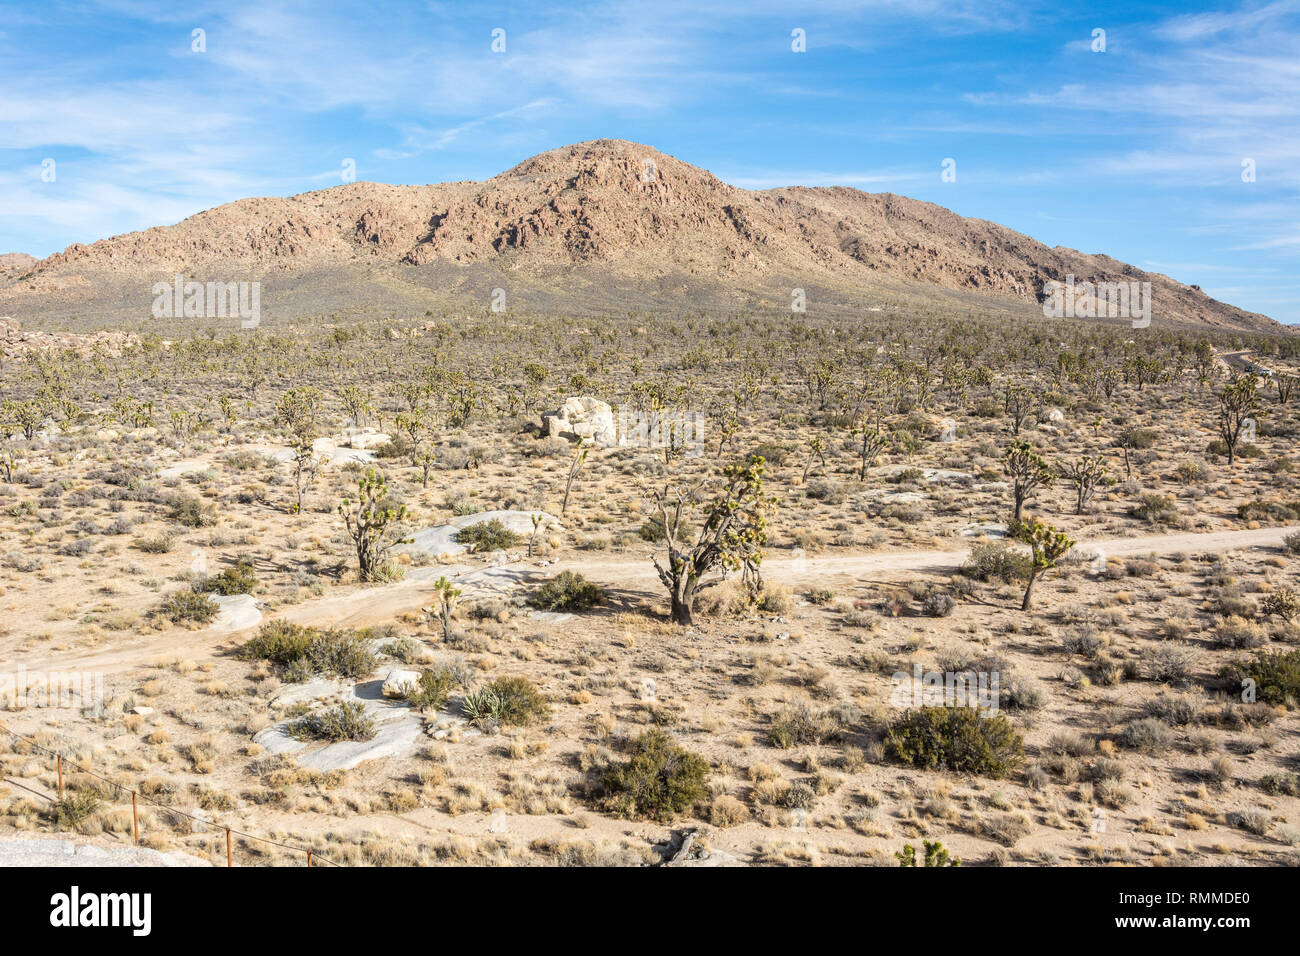 Landscape in Mojave Desert in California. Stock Photo